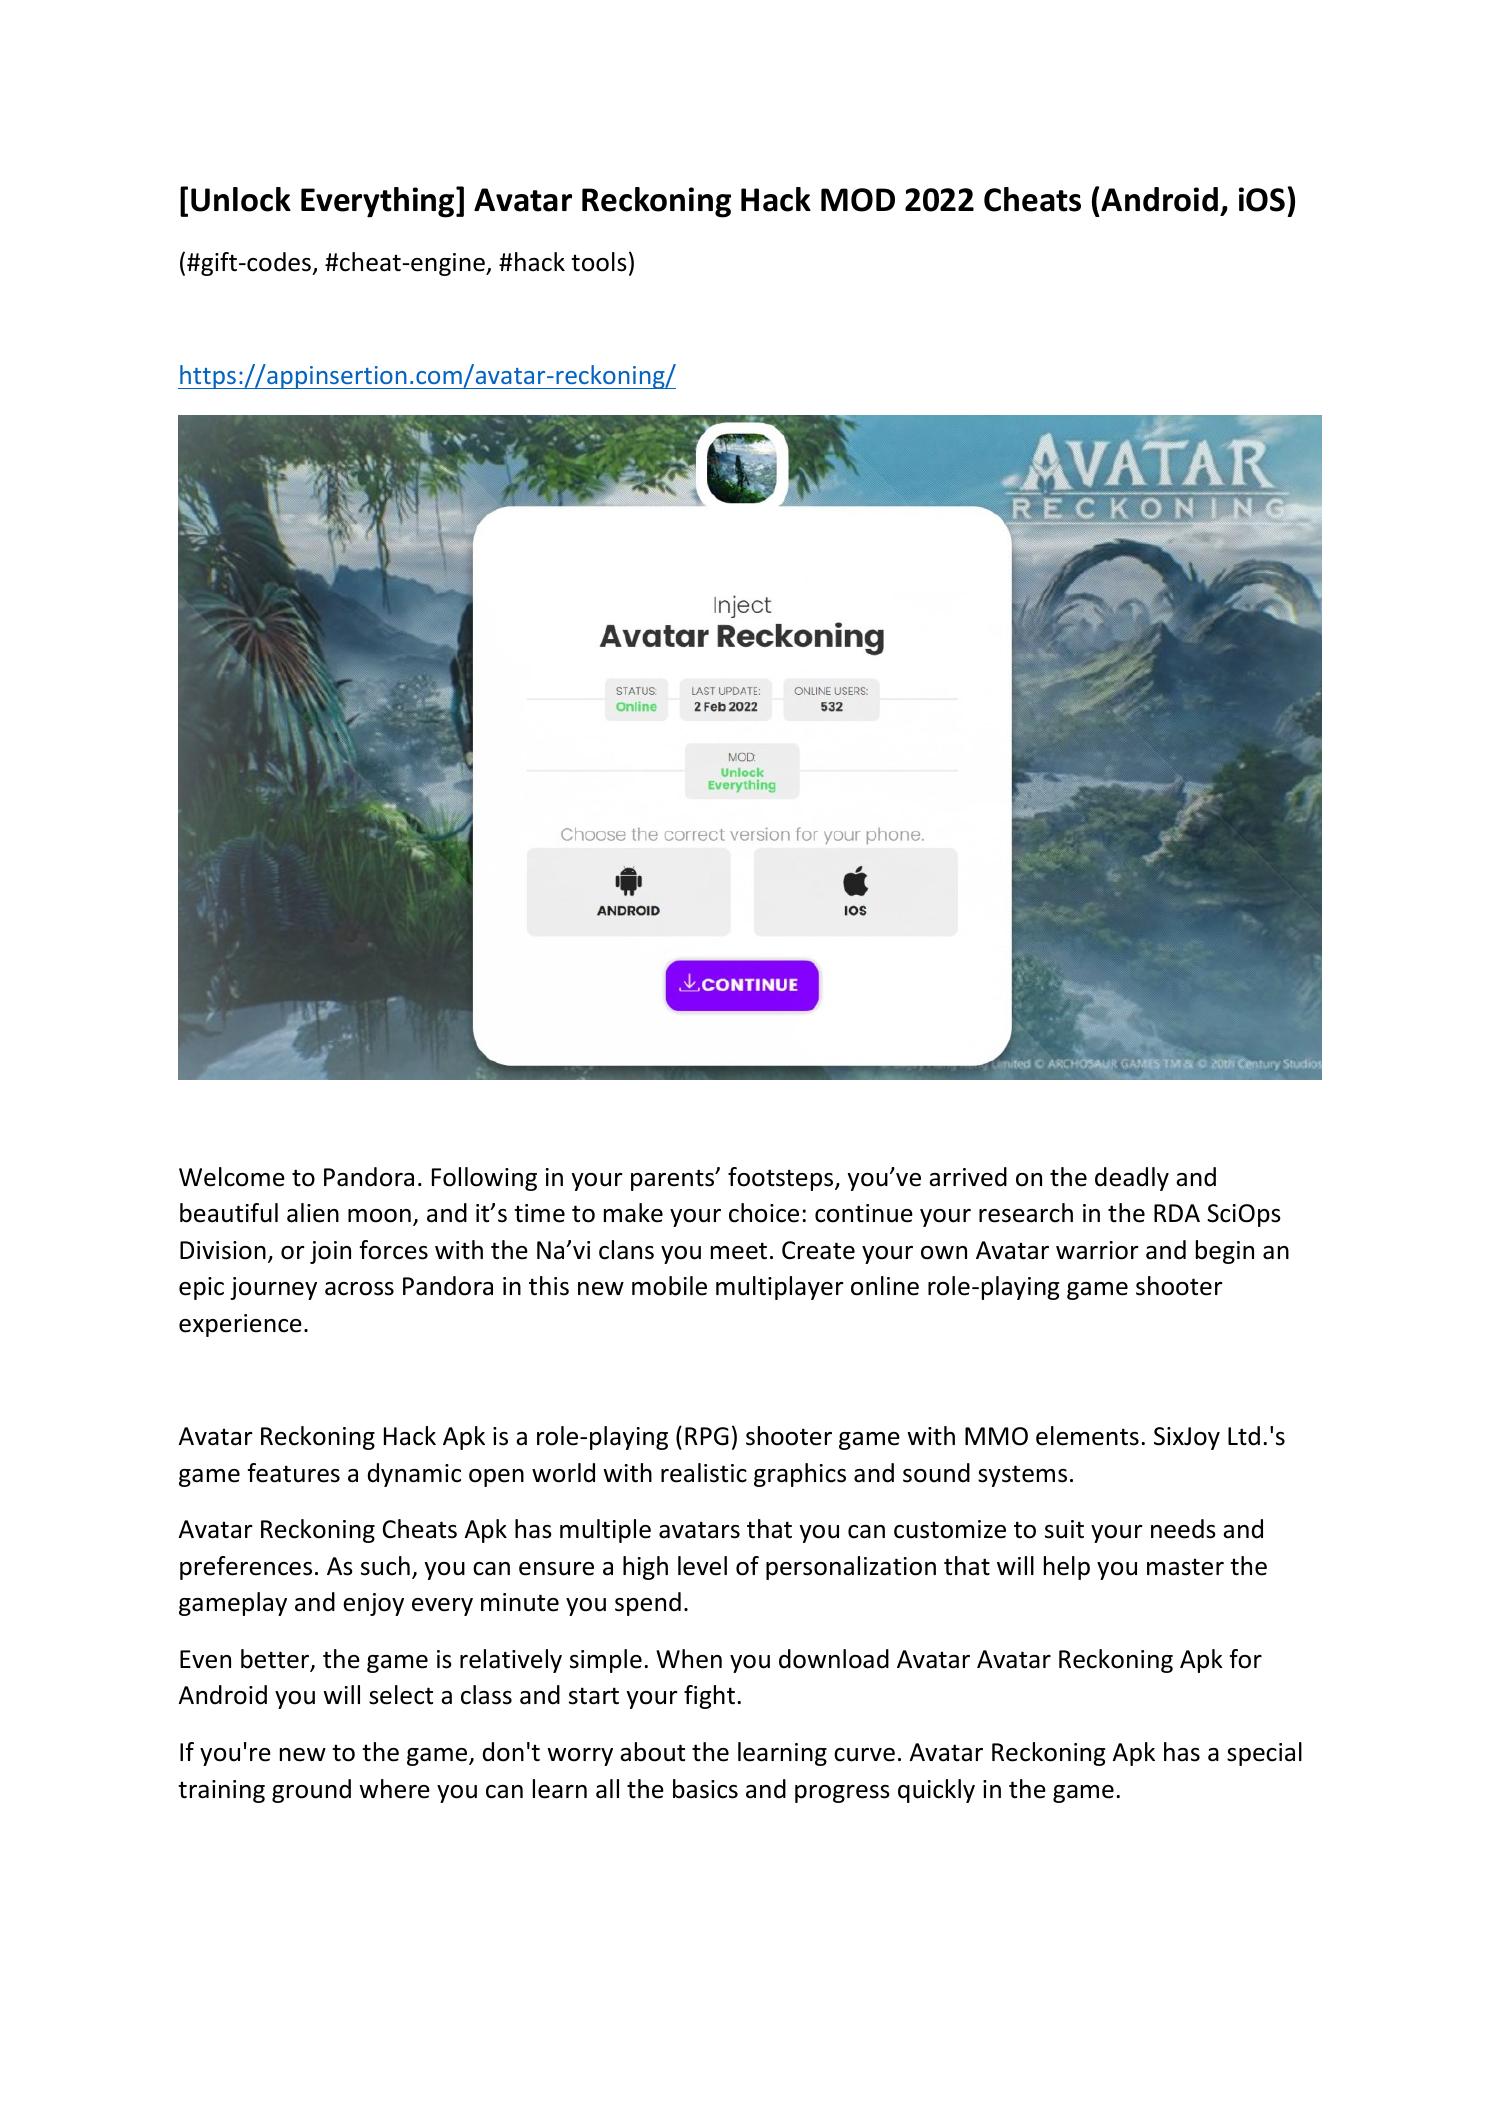 Avatar Reckoning Hack MOD 2024 (Android/iOS): Avatar Reckoning Hack MOD 2024 cho phép người chơi trải nghiệm những tính năng hack thông minh và độc đáo. Được cải tiến và tối ưu hóa cho cả Android và iOS, Avatar Reckoning Hack MOD 2024 đem đến cho người chơi những trải nghiệm game Avatar chân thực và đầy hấp dẫn.